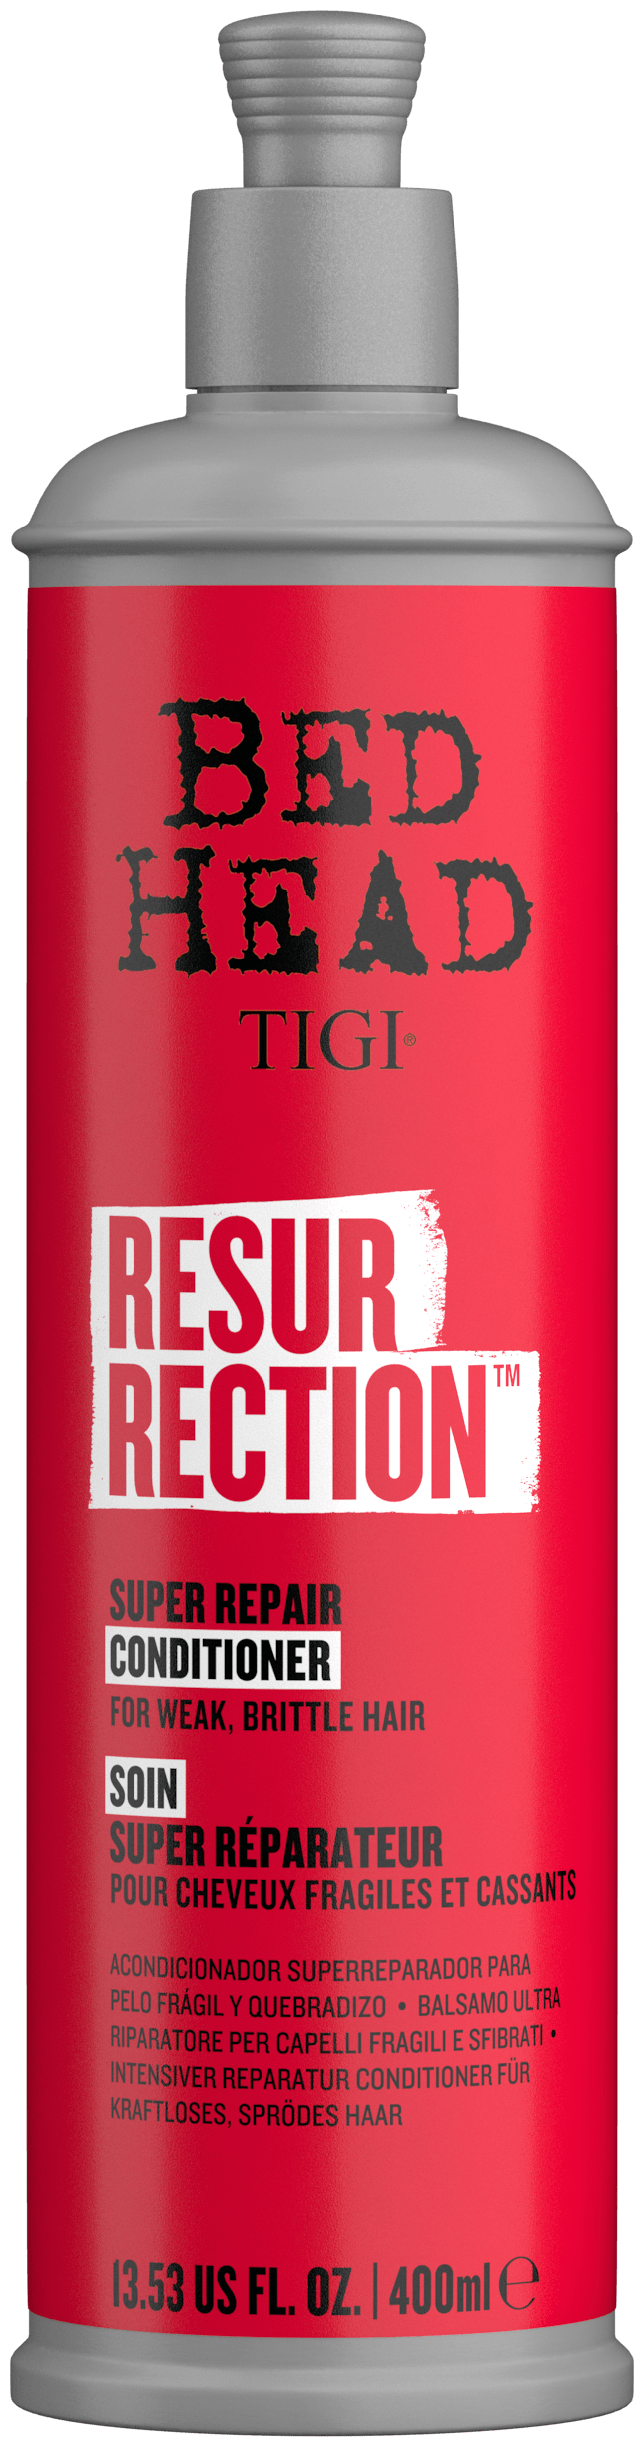 TIGI Кондиционер для сильно поврежденных волос / Bed head Resurrection 600 мл - фото №1